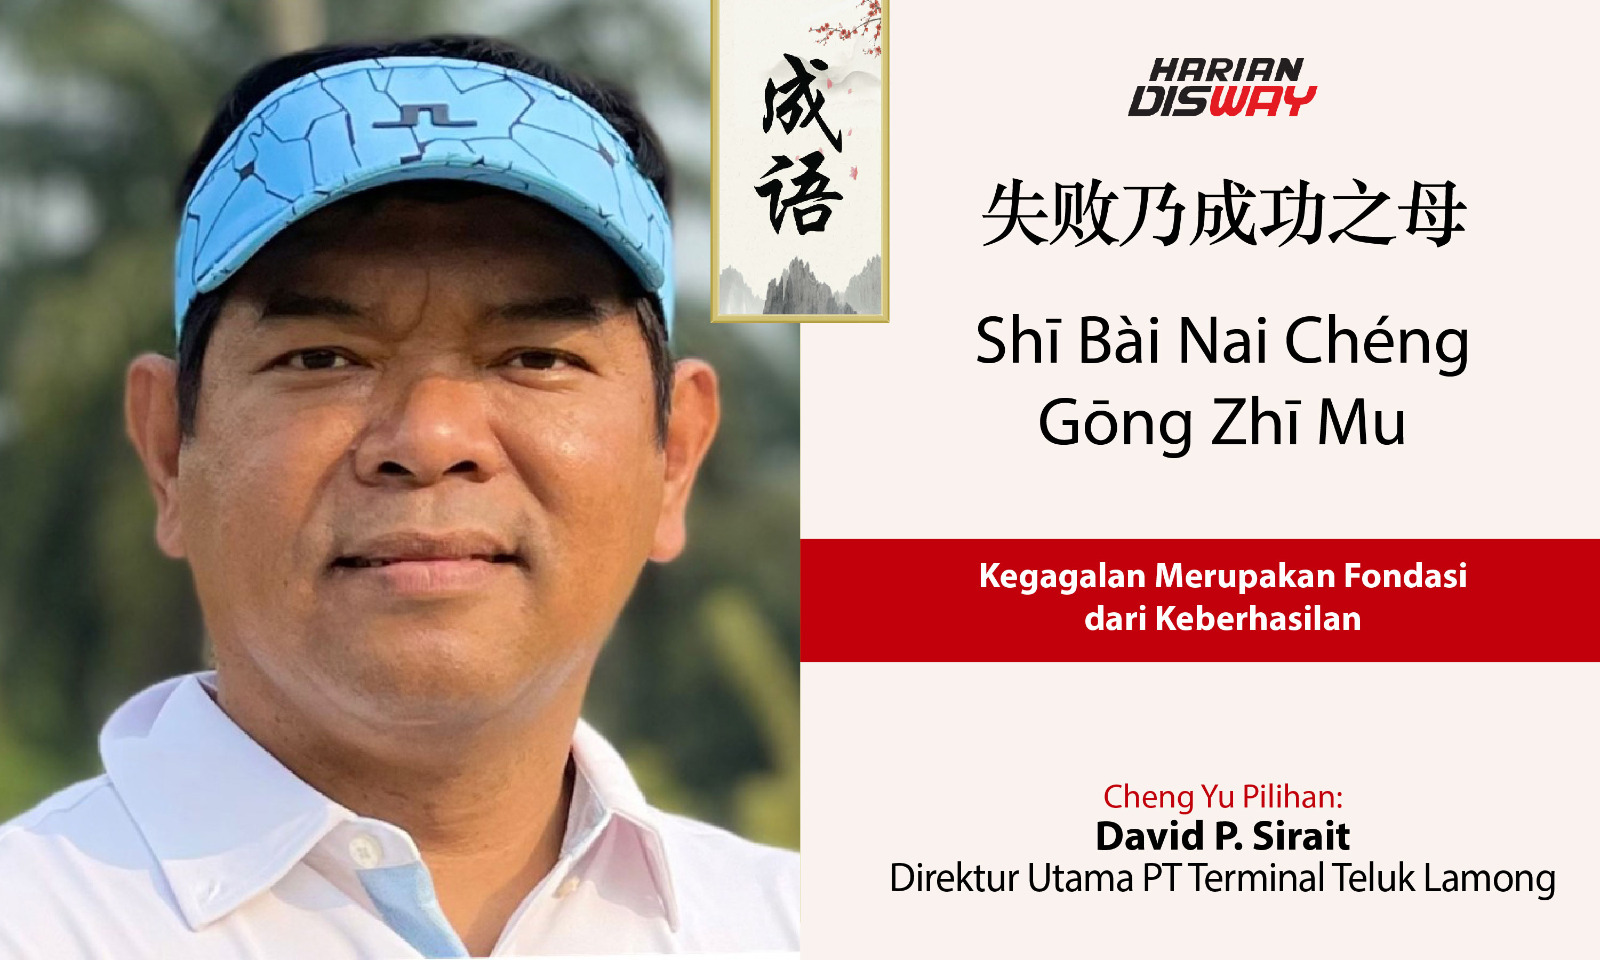 Cheng Yu Pilihan Direktur Utama PT Terminal Teluk Lamong David P. Sirait: Shi Bai Nai Cheng Gong Zhi Mu